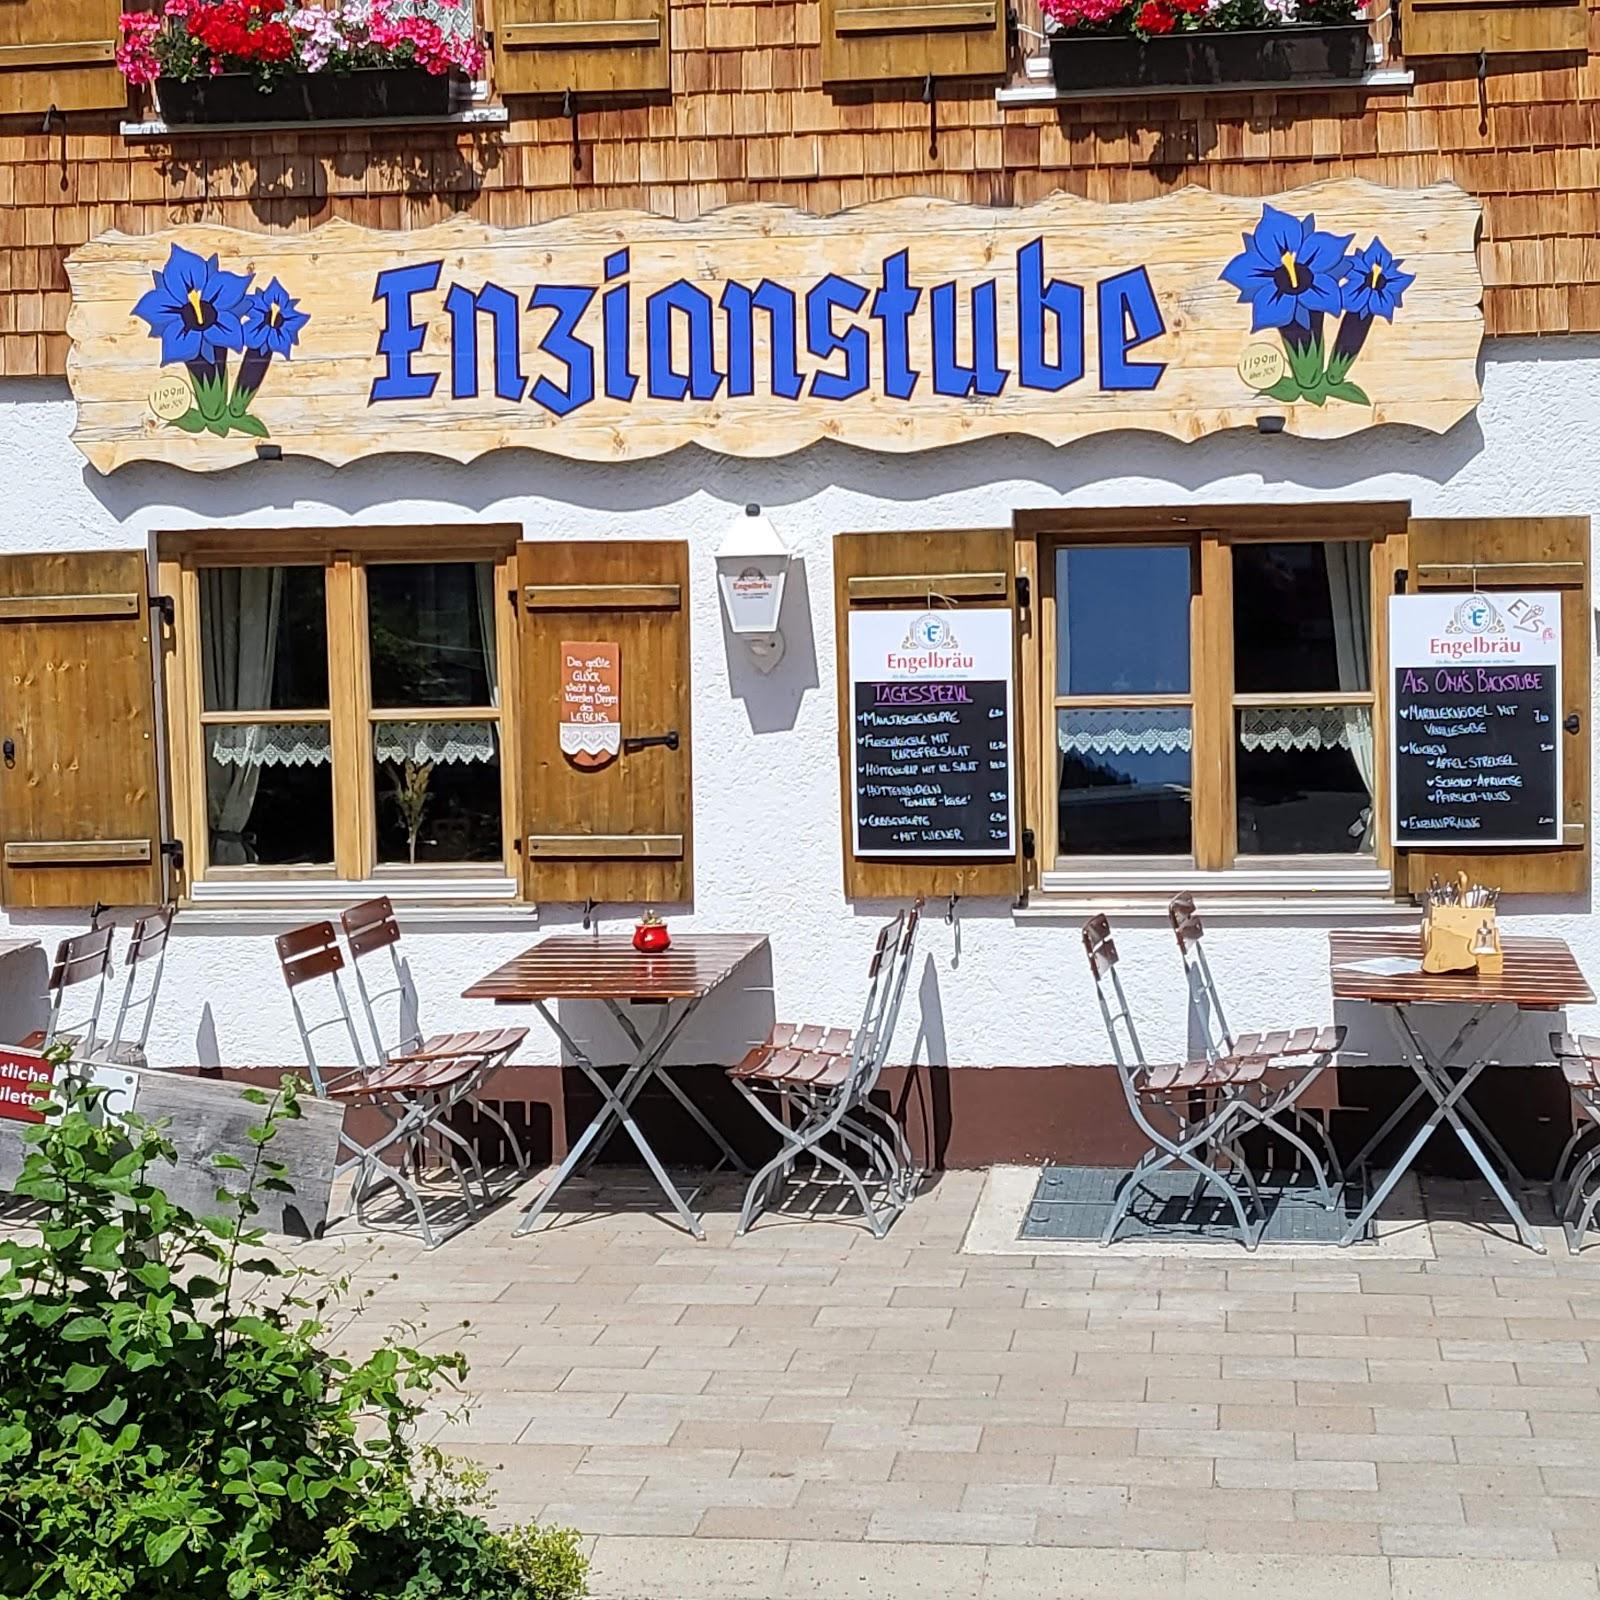 Restaurant "Enzianstube" in Nesselwang